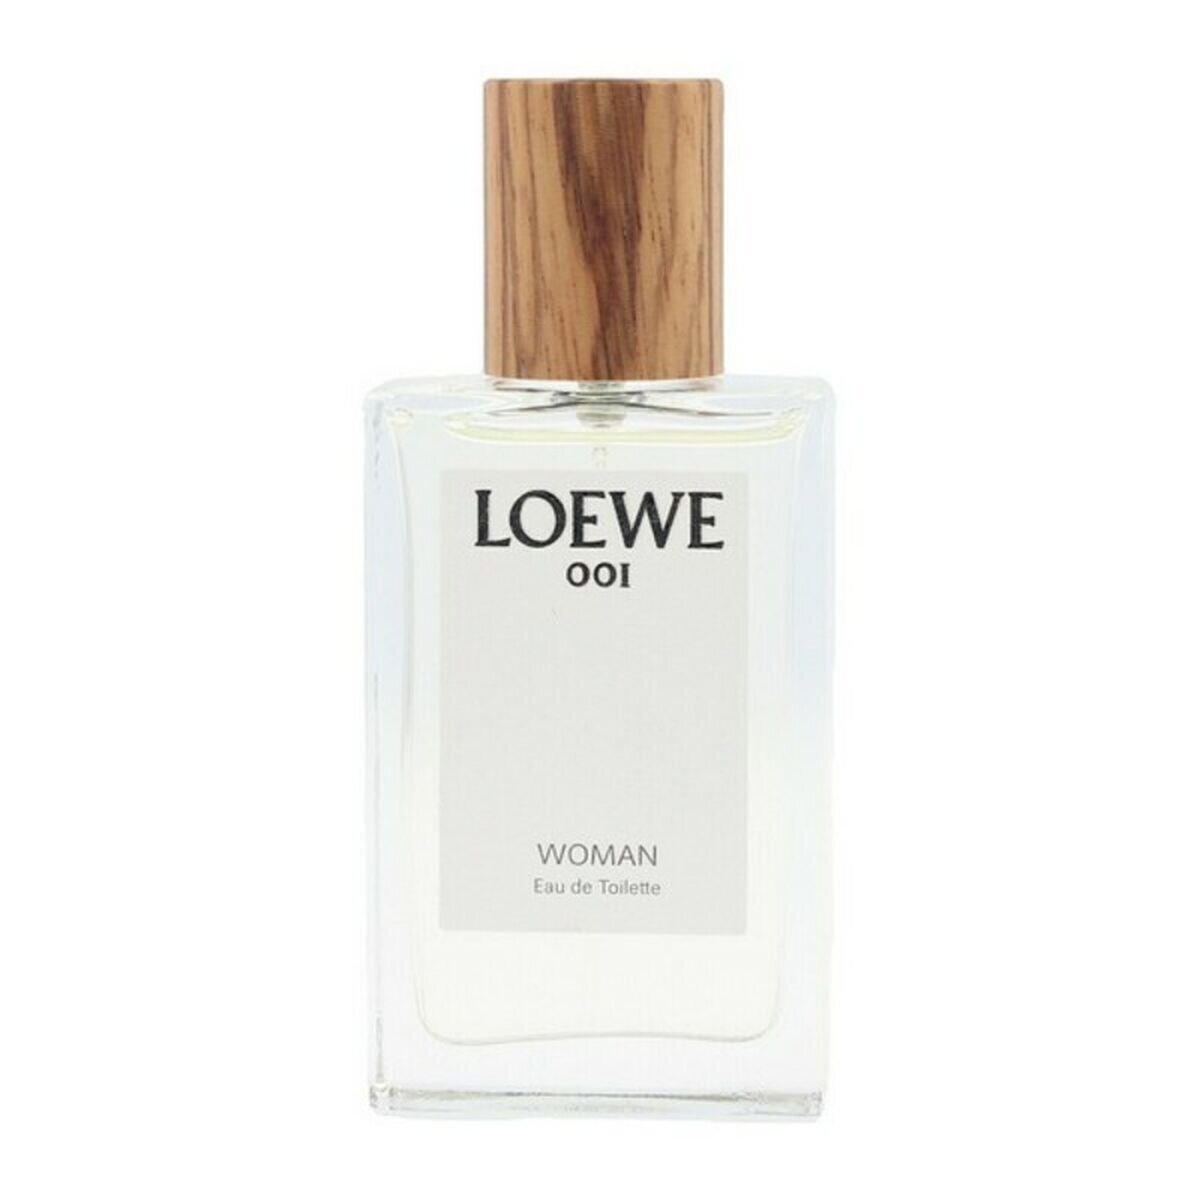 Loewe 001 Women Eau De Toilette